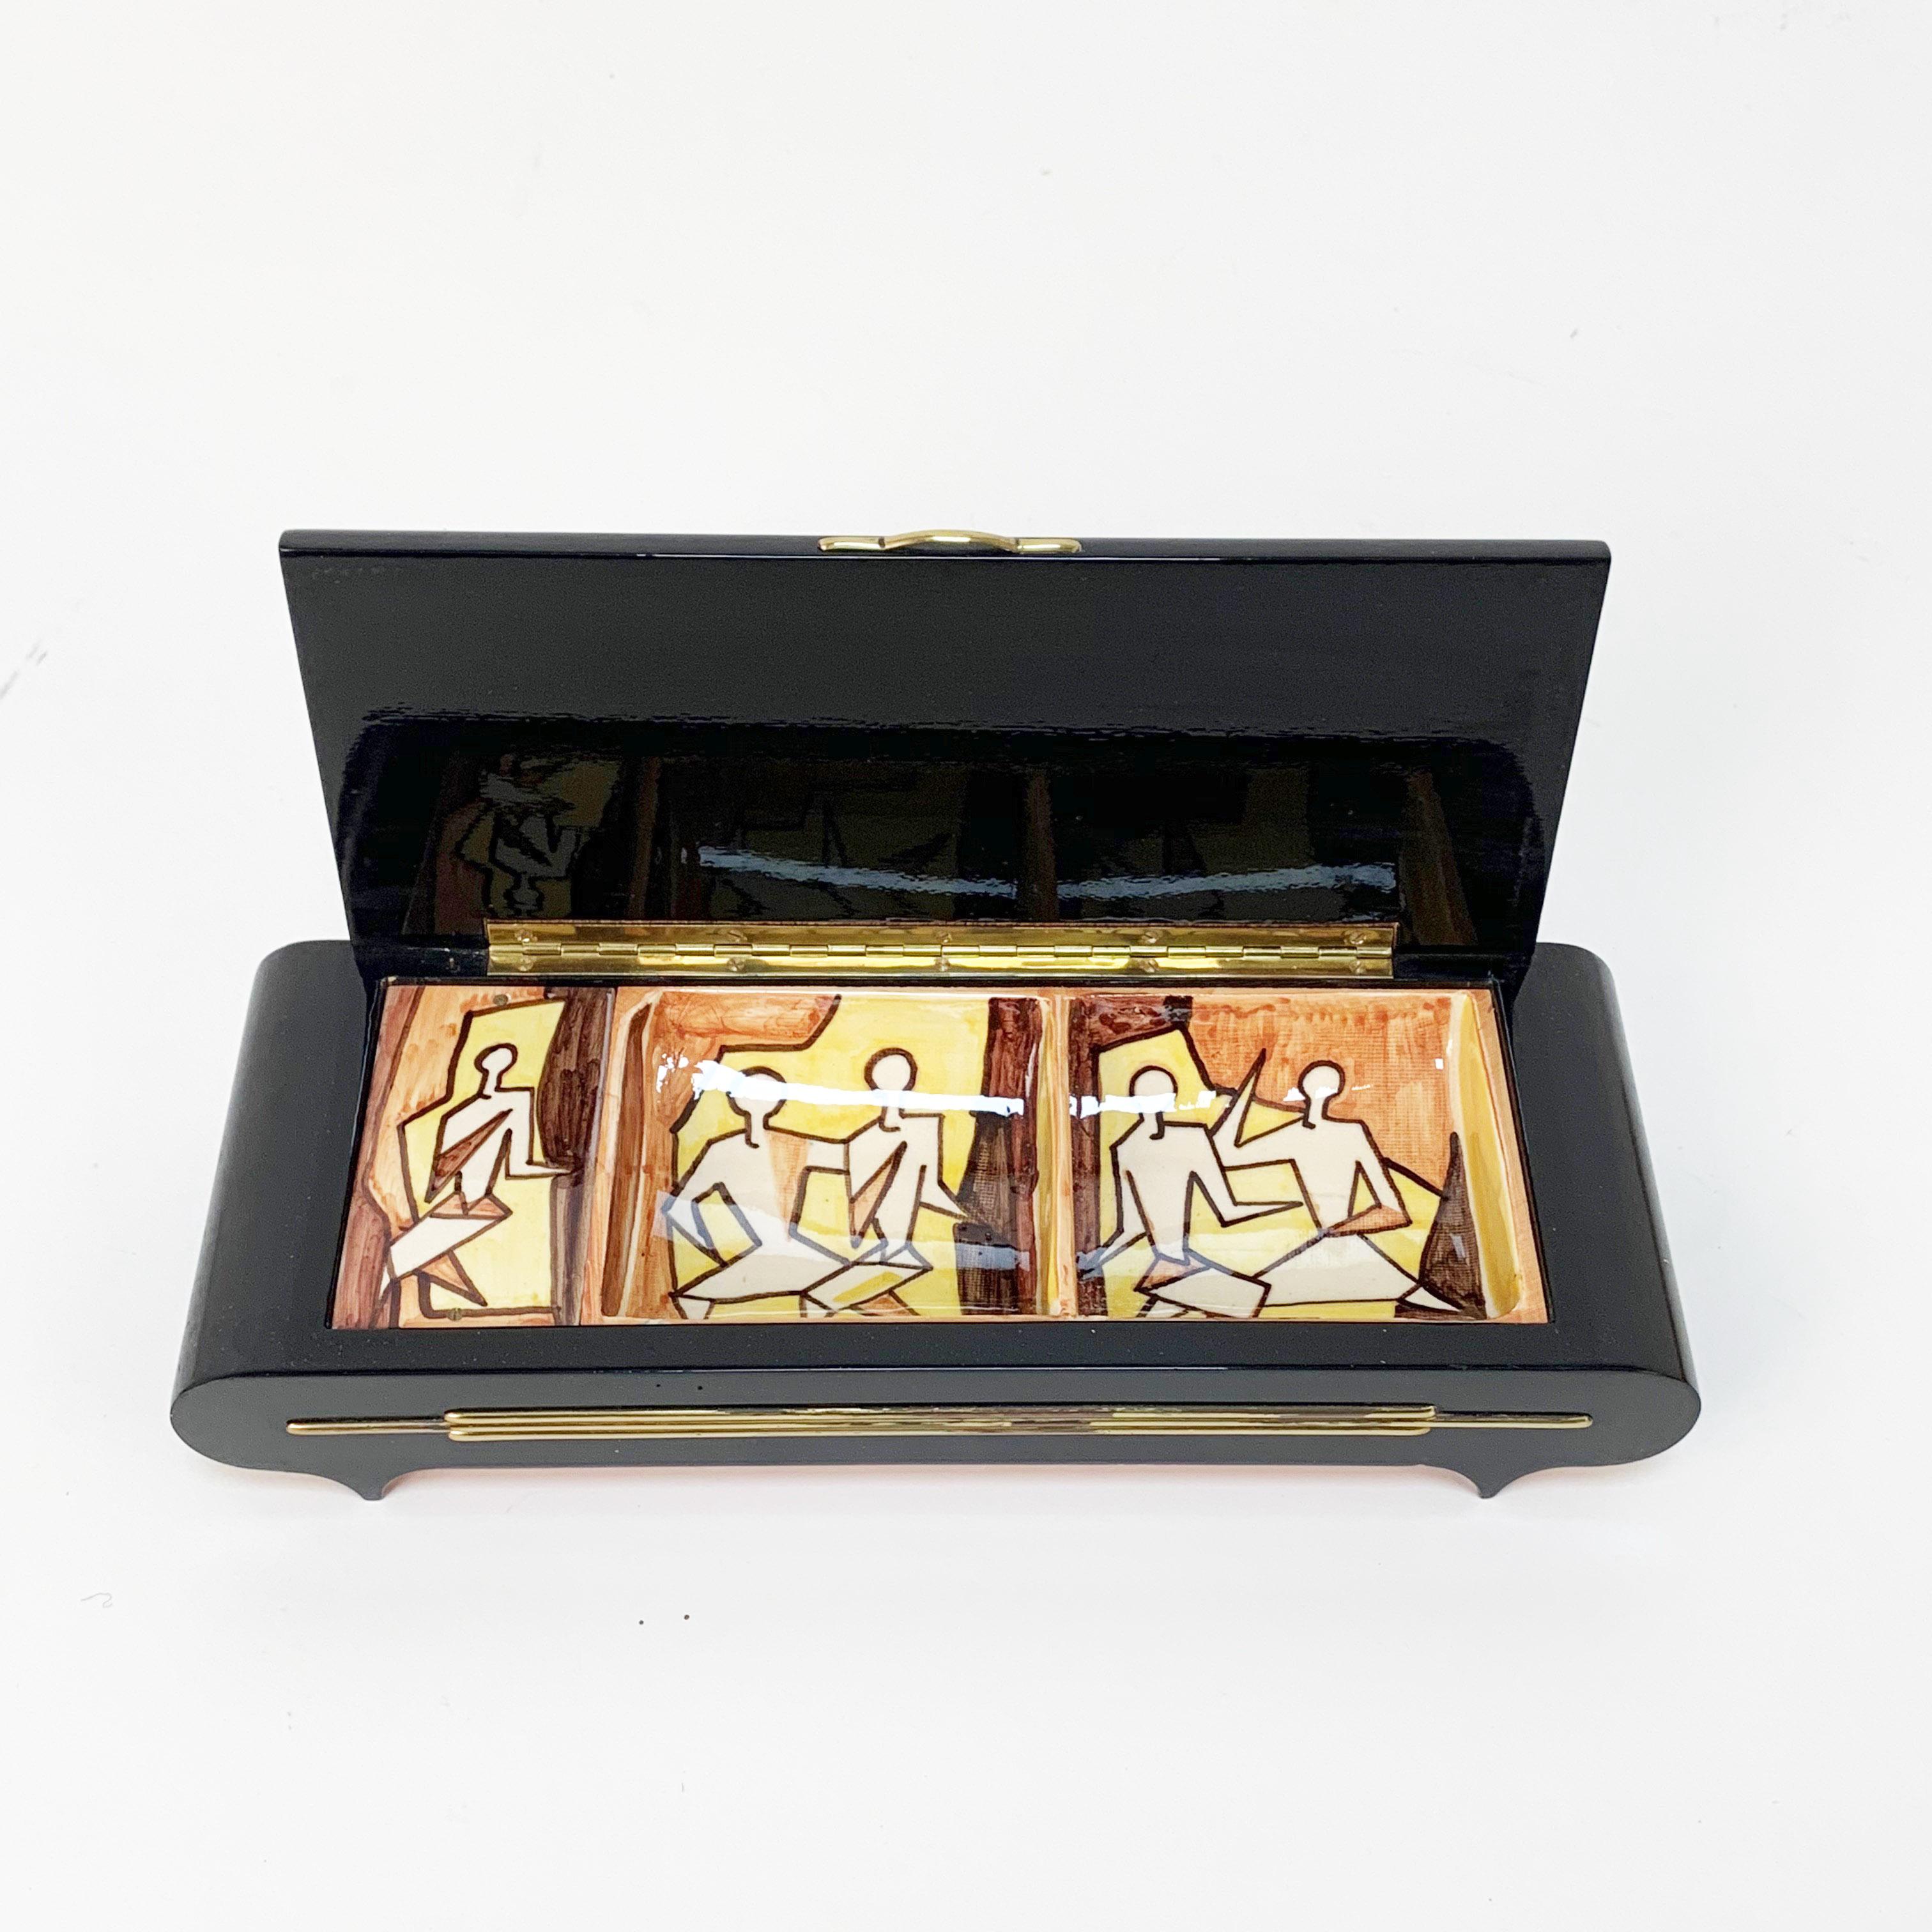 Lacquered Pier Giovanni Urbino, Decorated Ceramic Jewelry Box, Carillon, Italy, 1960s